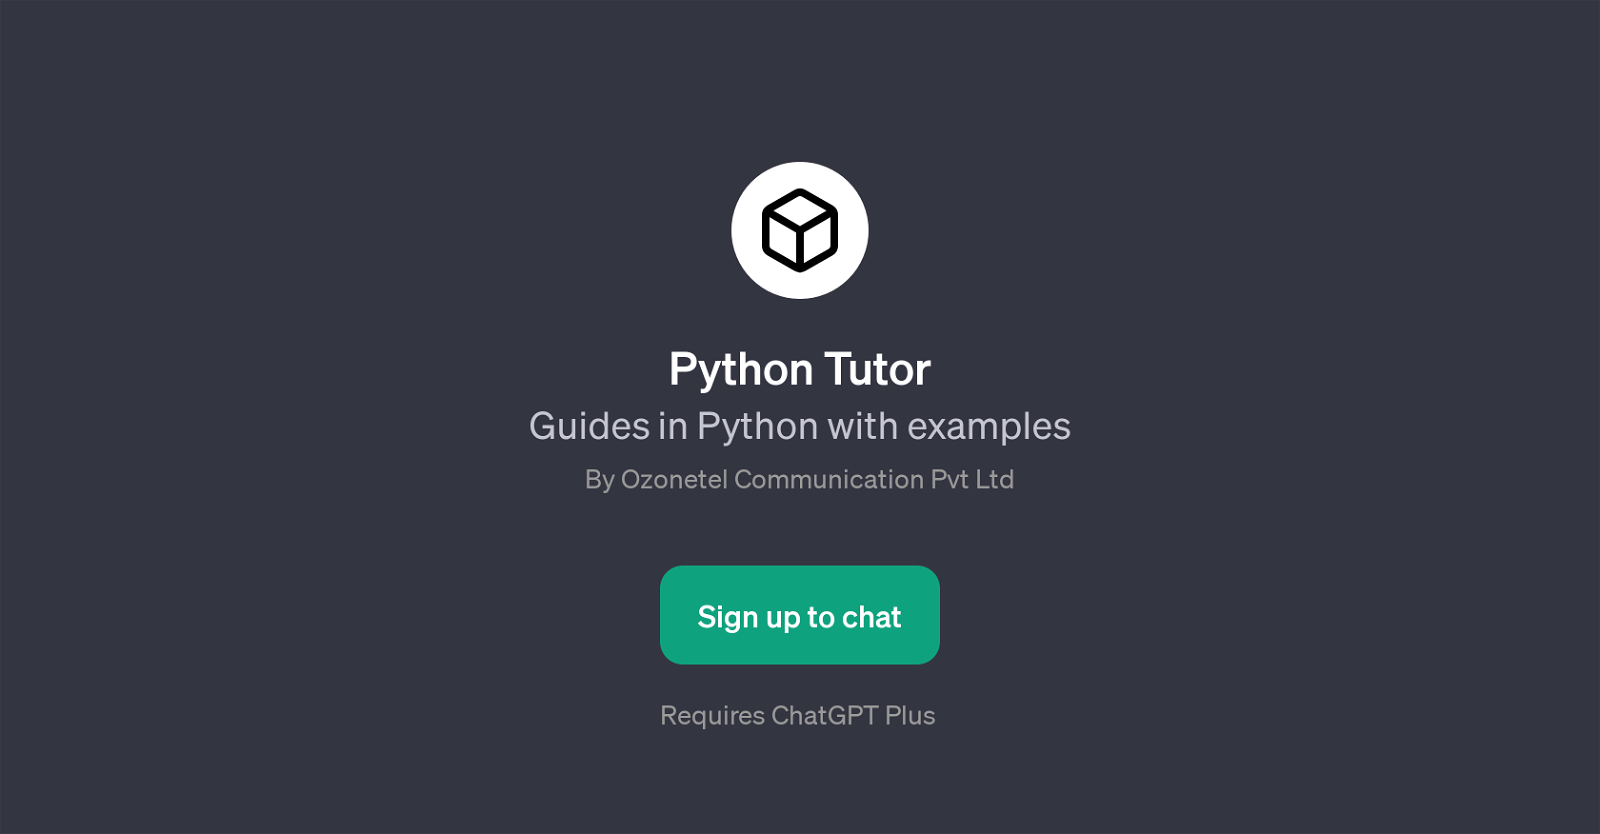 Python Tutor website